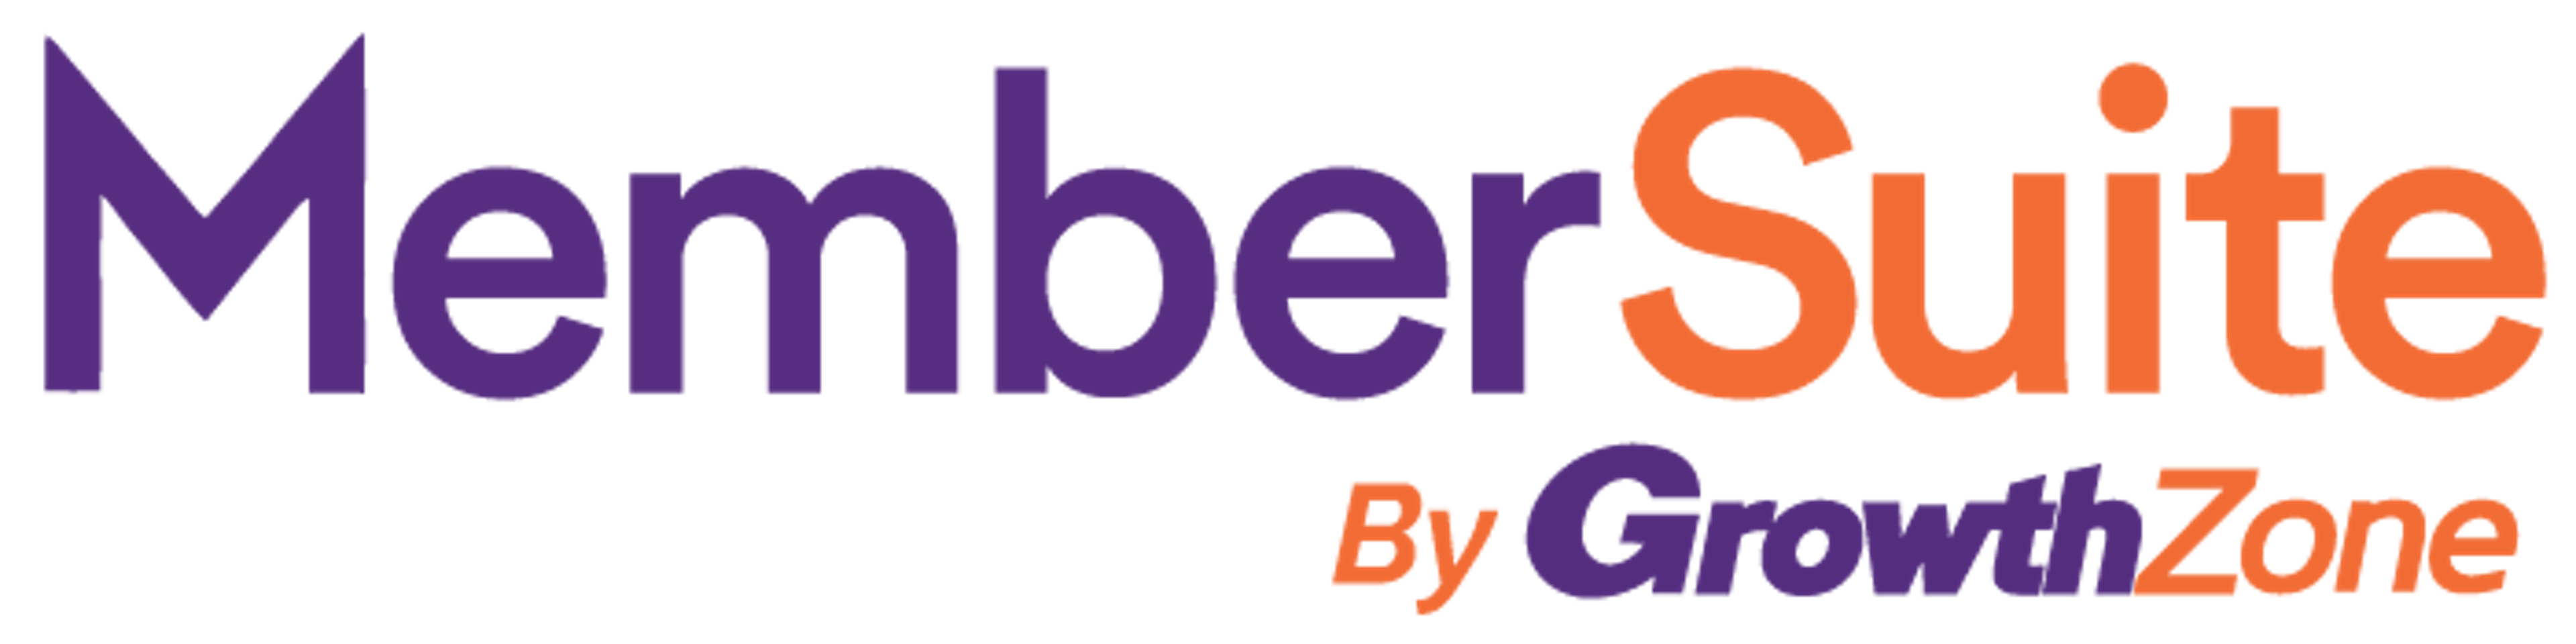 MemberSuite Logo